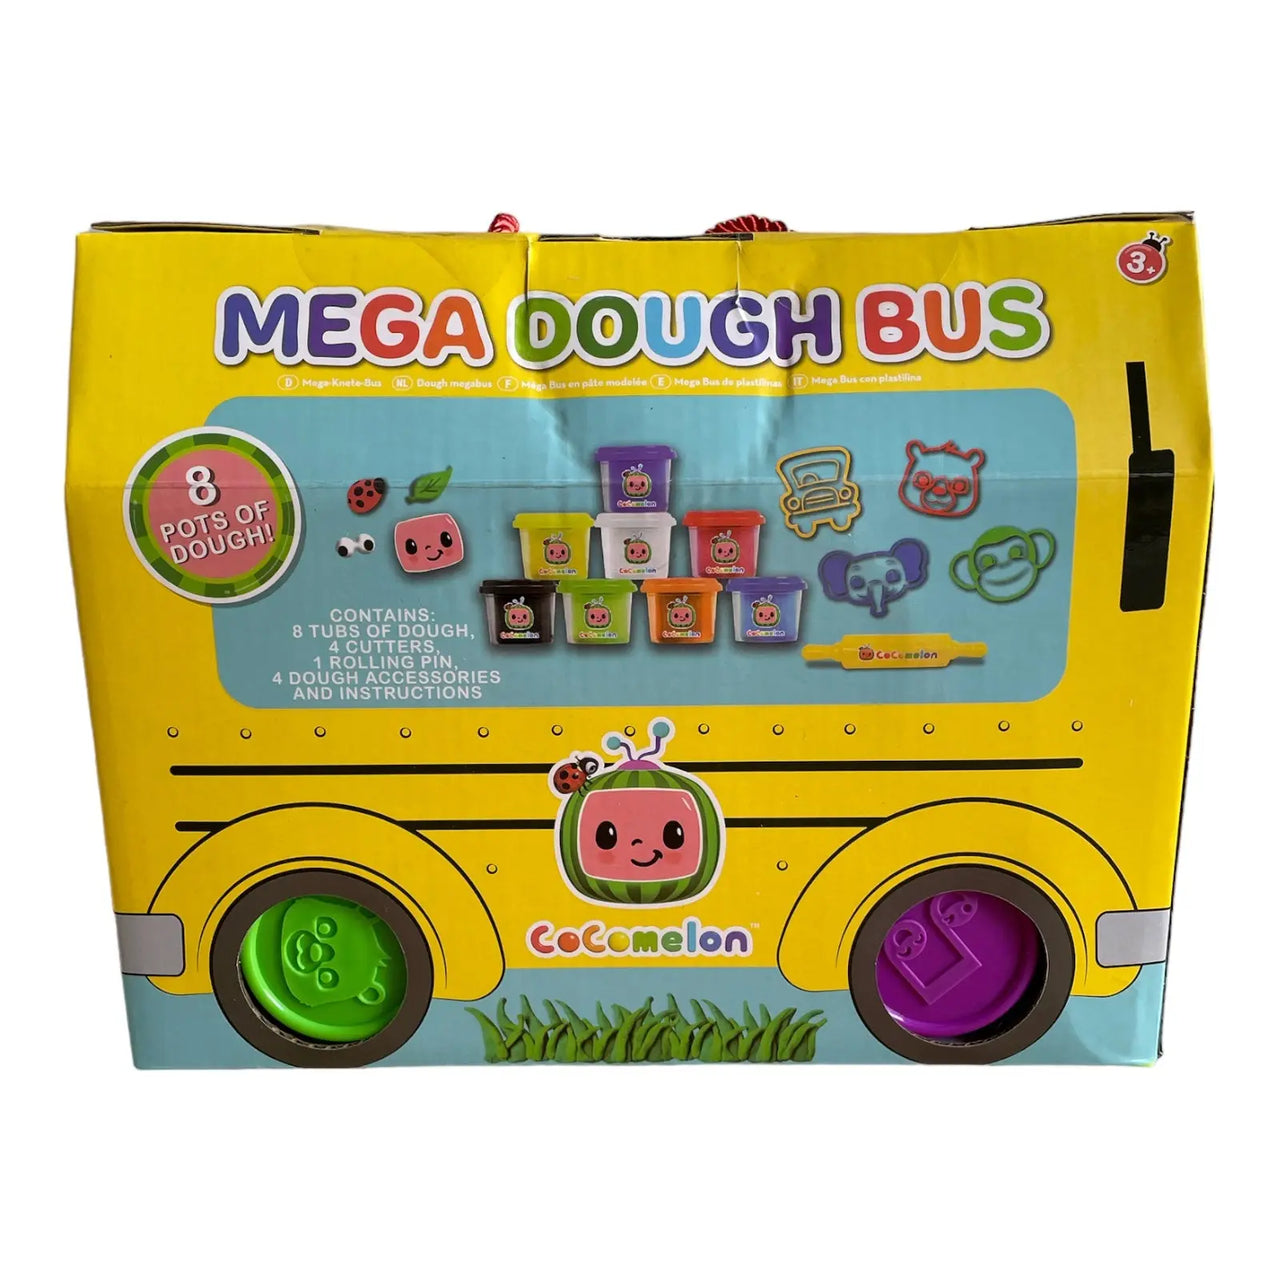 Cocomelon Mega Dough Bus CoComelon